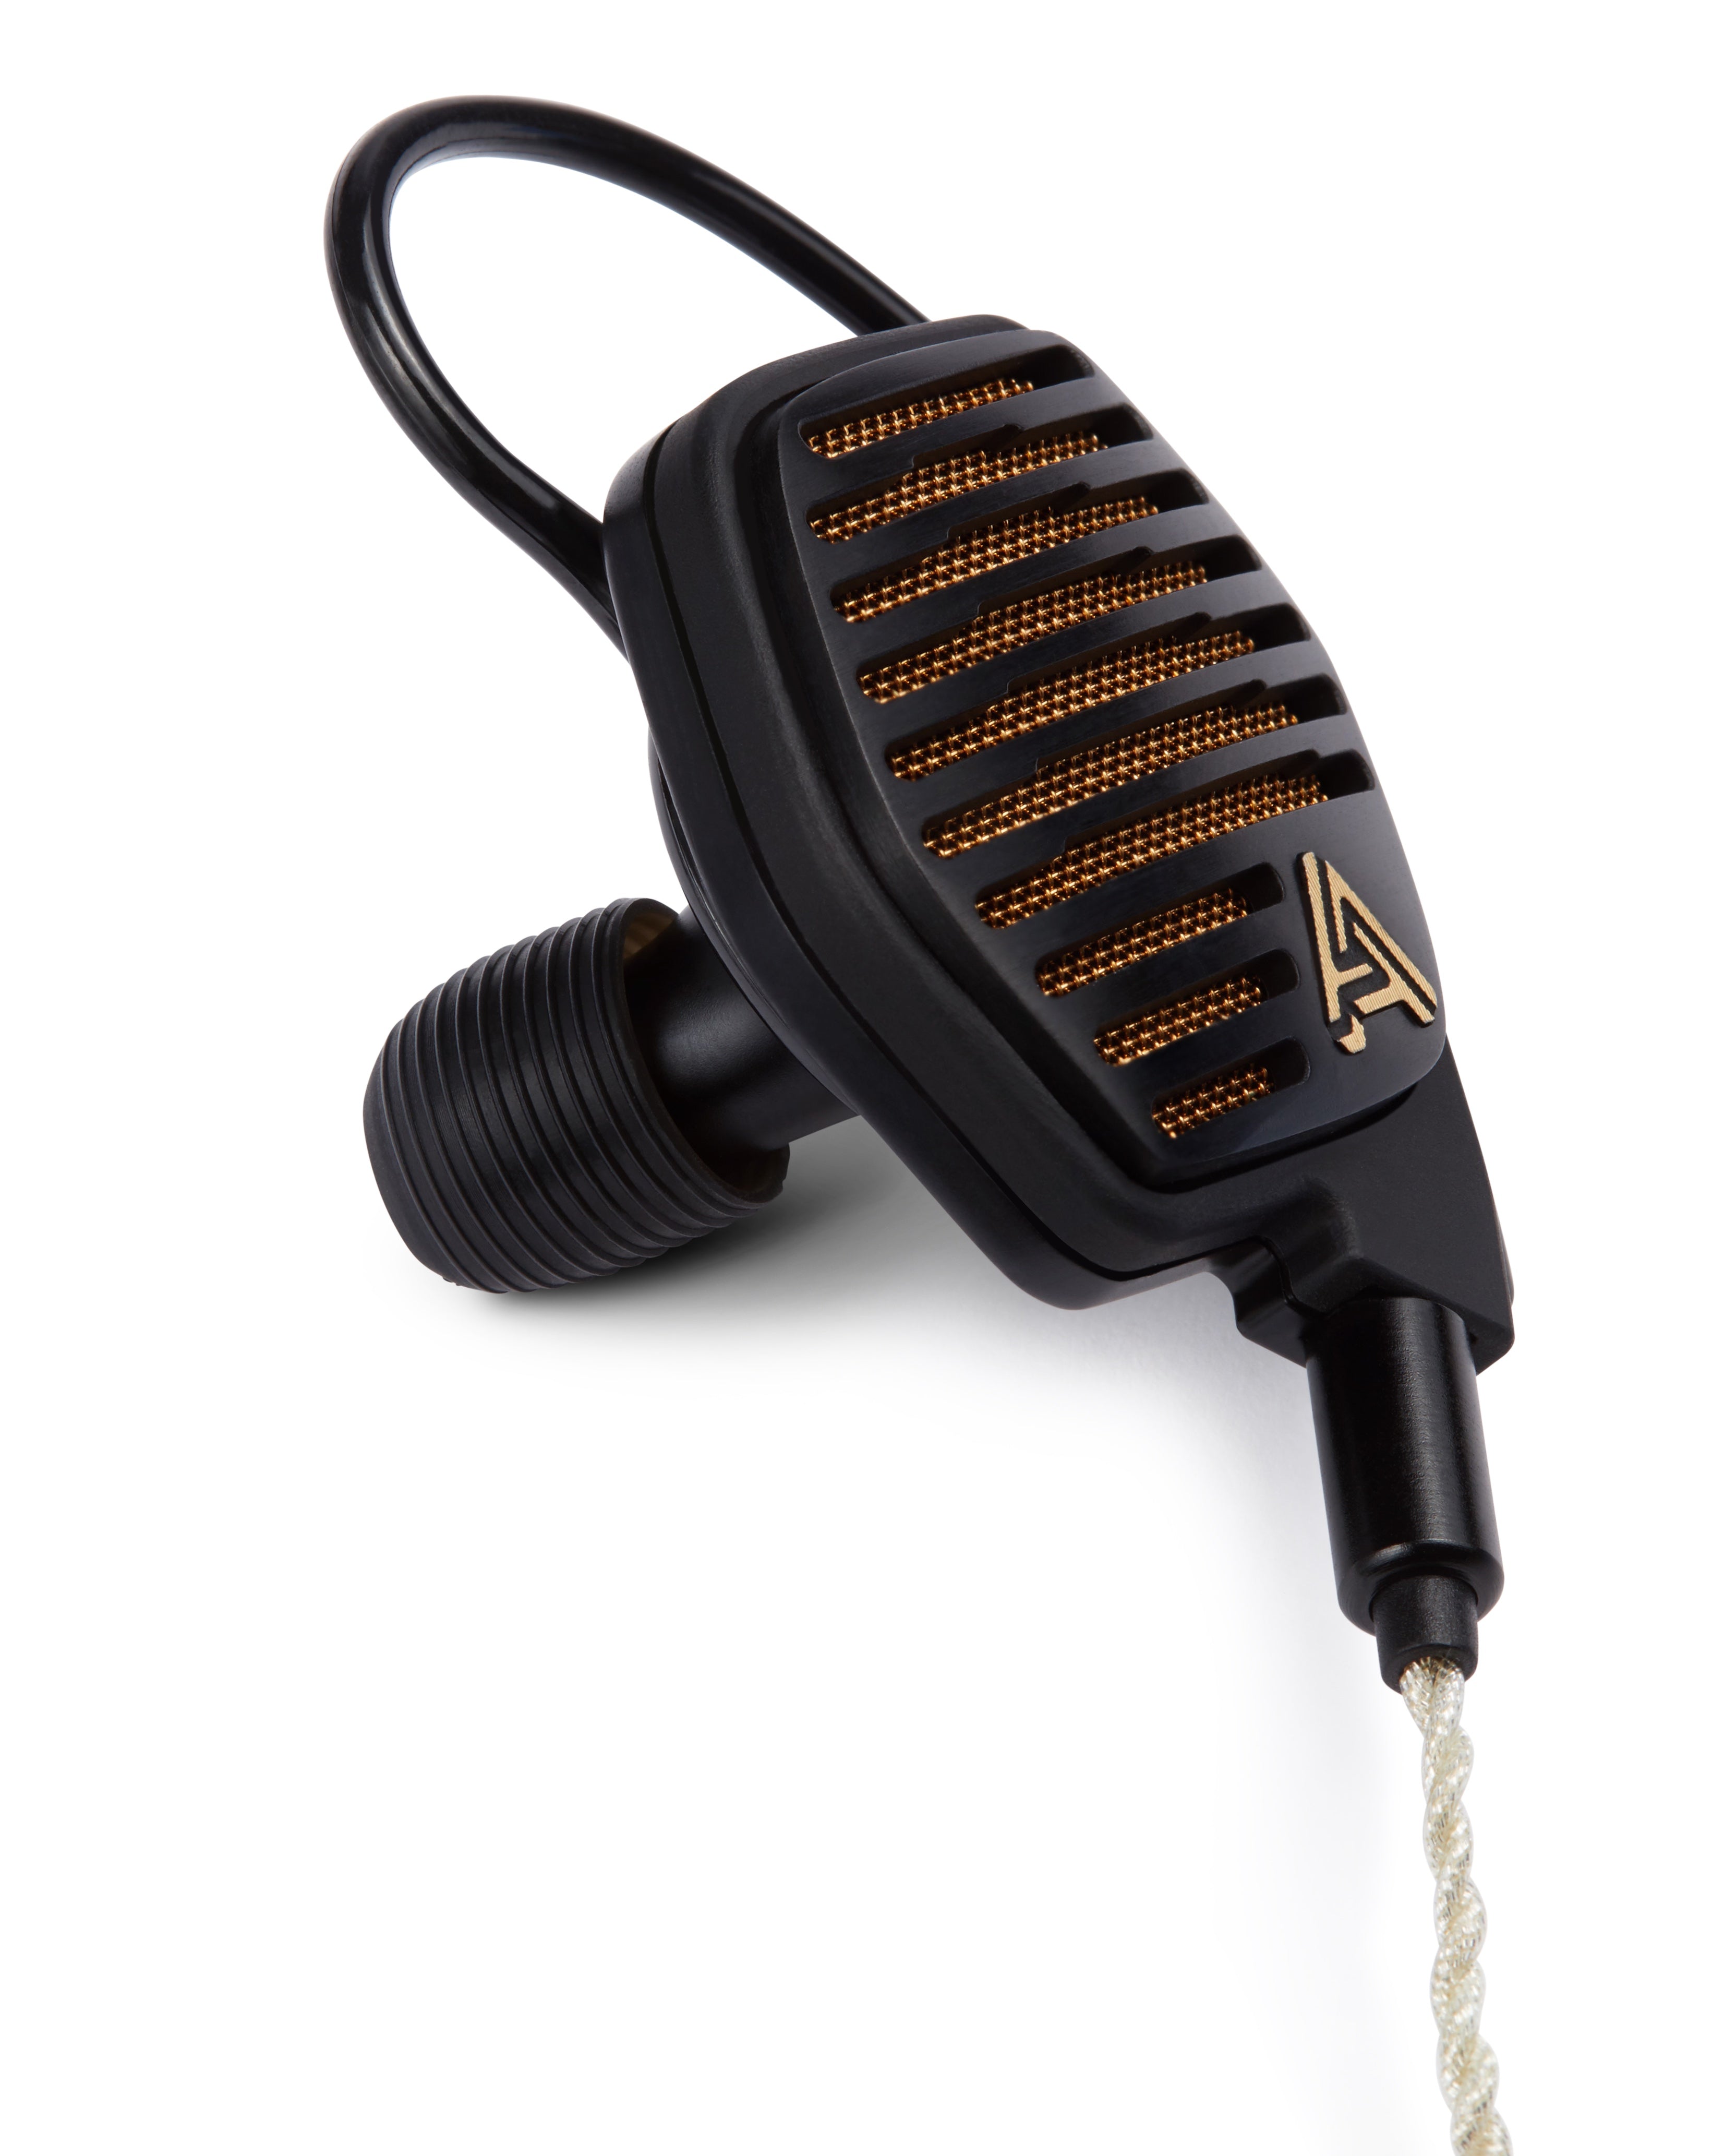 Audeze LCDi4 Open-Back In-Ear Headphones